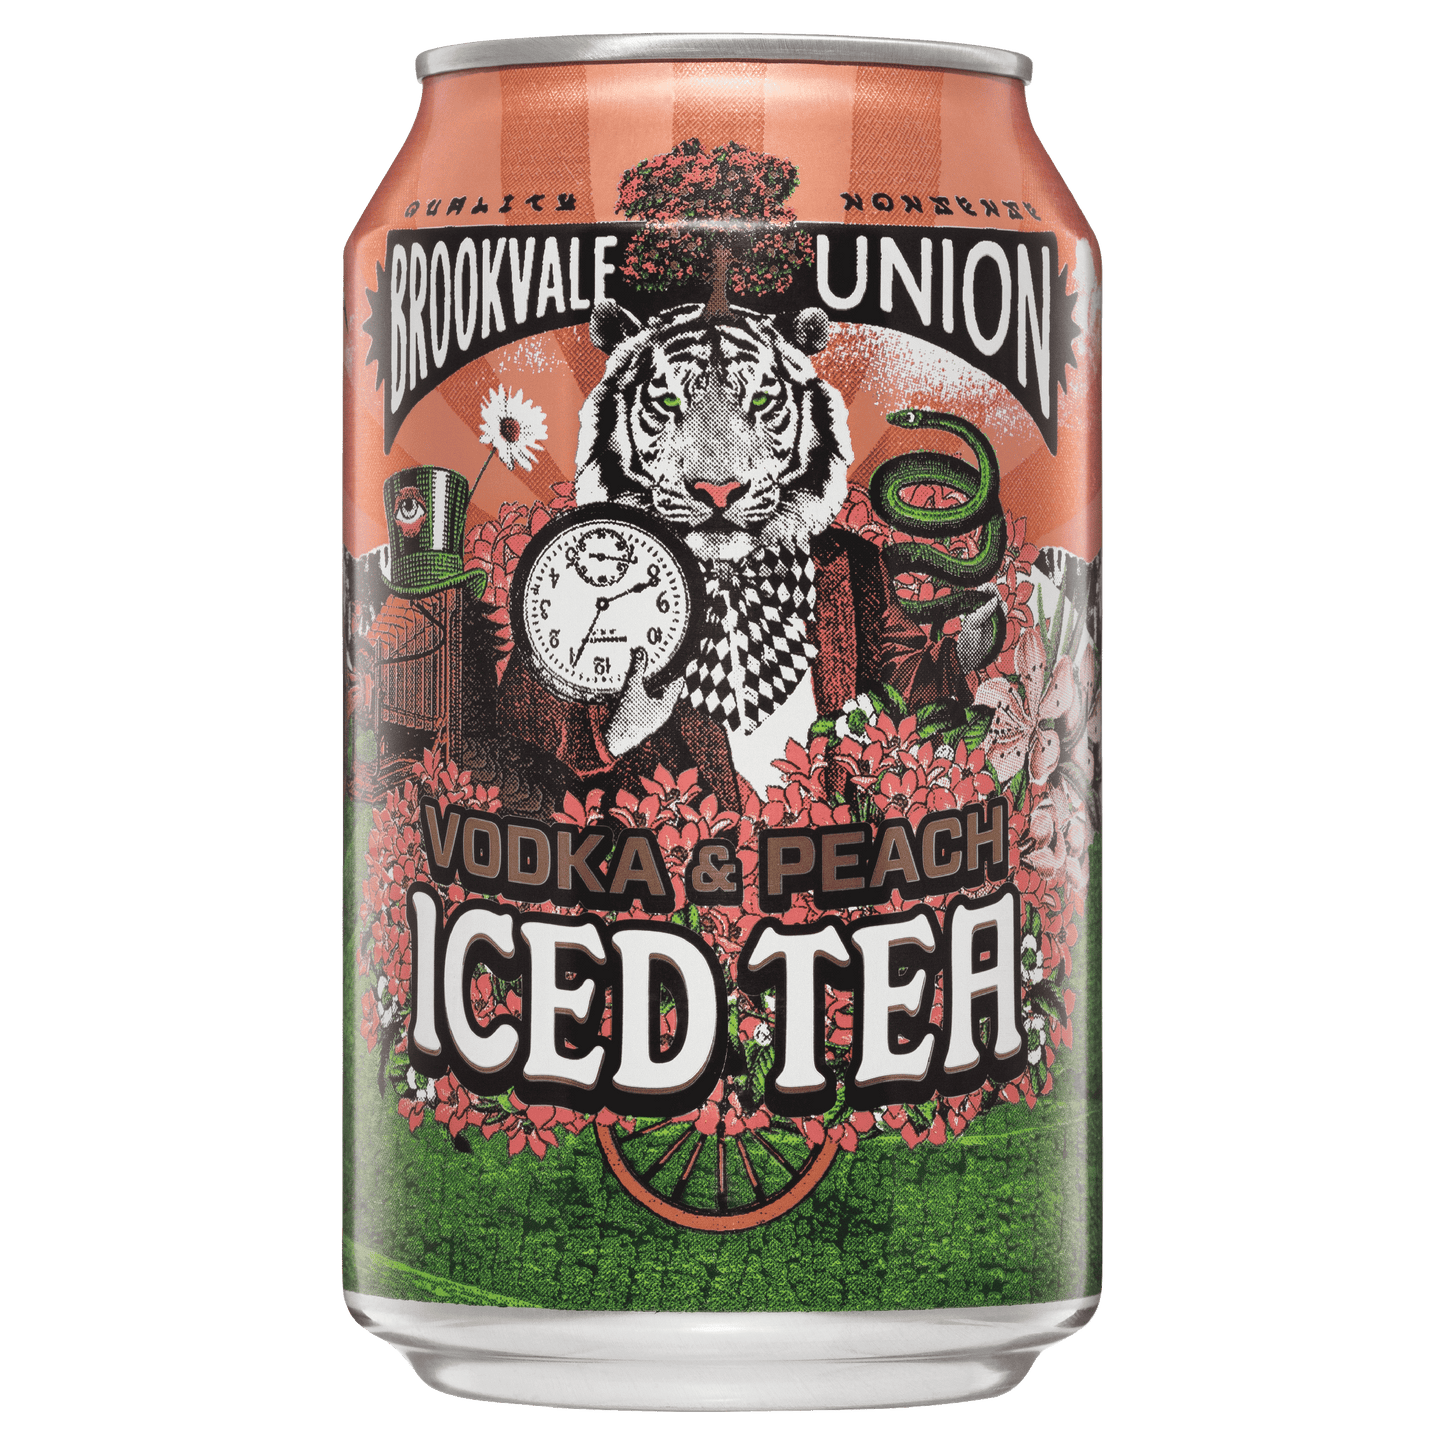 Brookvale Union Vodka& Peach Iced Tea